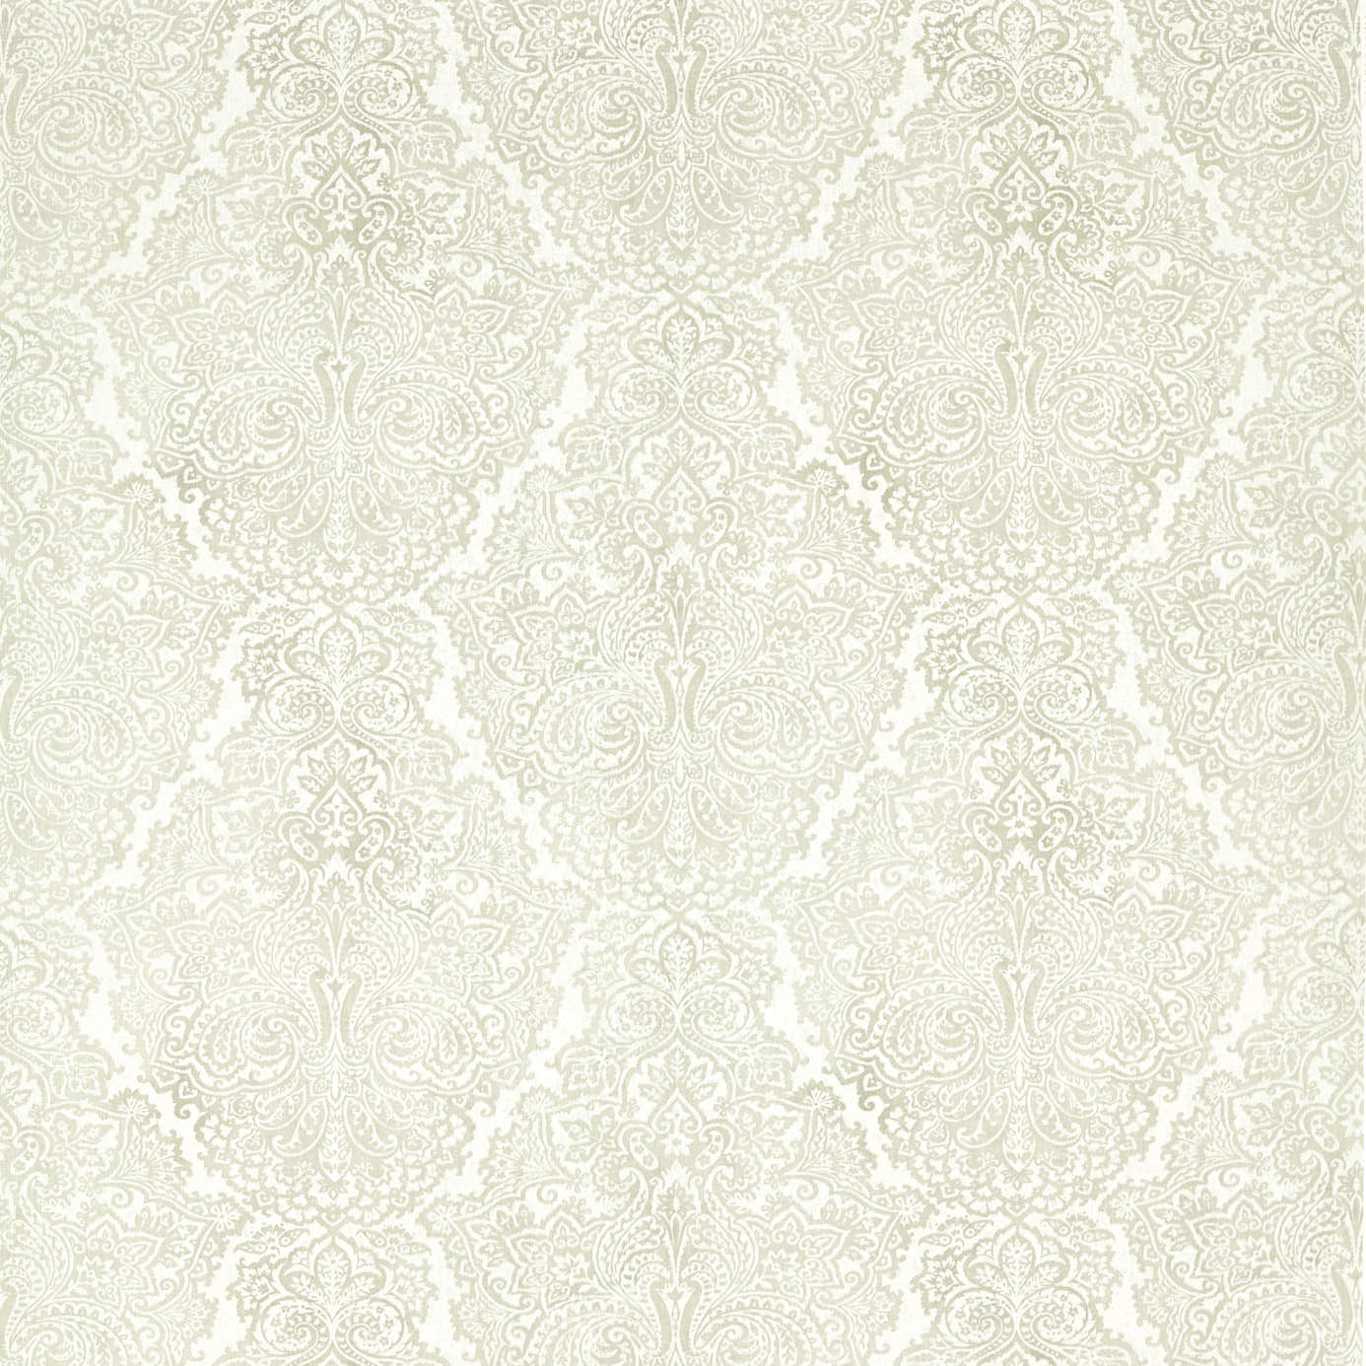 Aureilia Fabric by Harlequin - HTEF120973 - Dove/Chalk